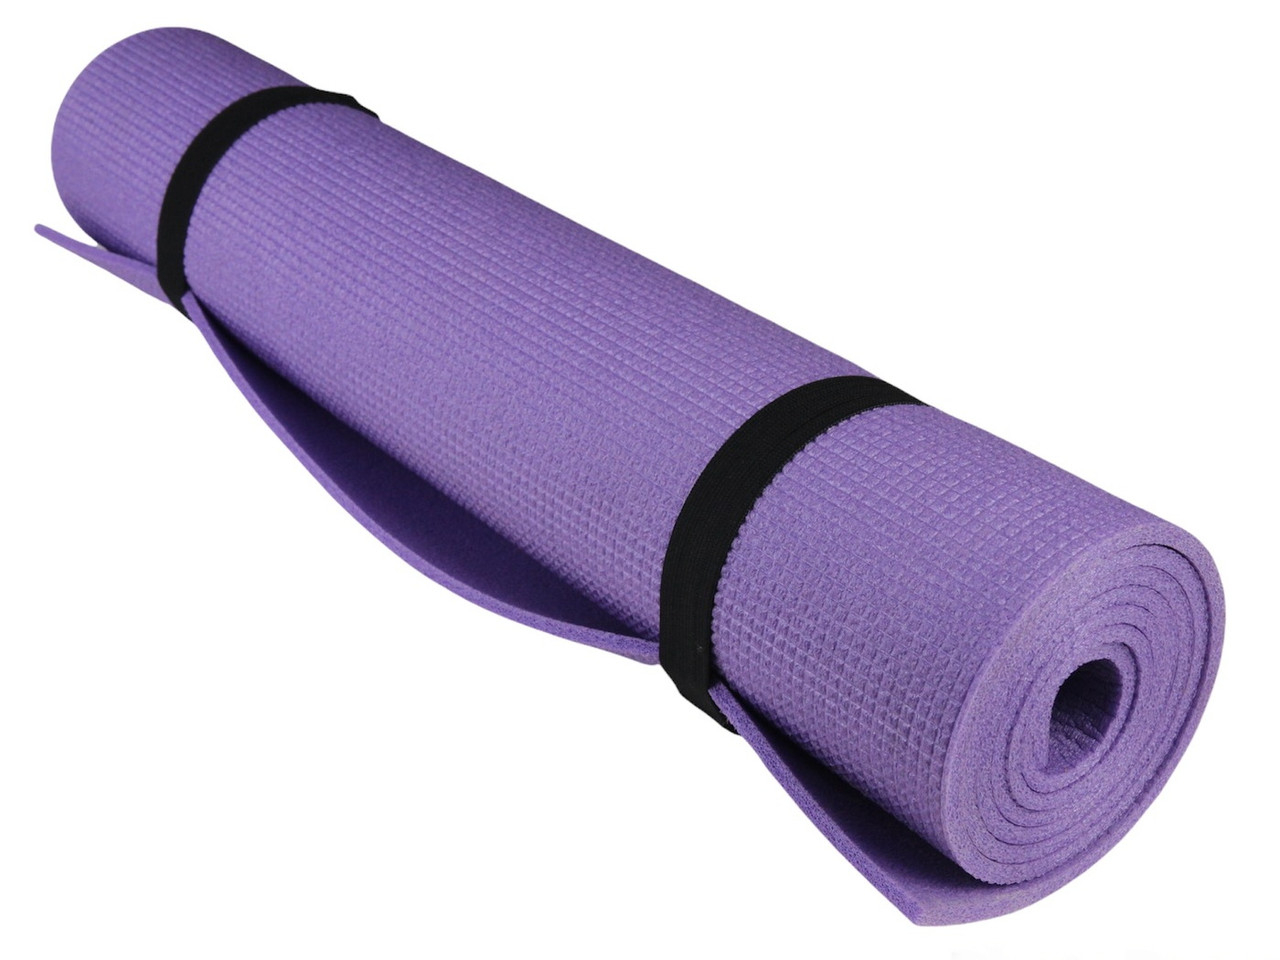 Килимок для фітнесу та йоги AEROBICA 5, фіолетовий, рулонний, товщина 5мм, ширина 120см детальна фотка